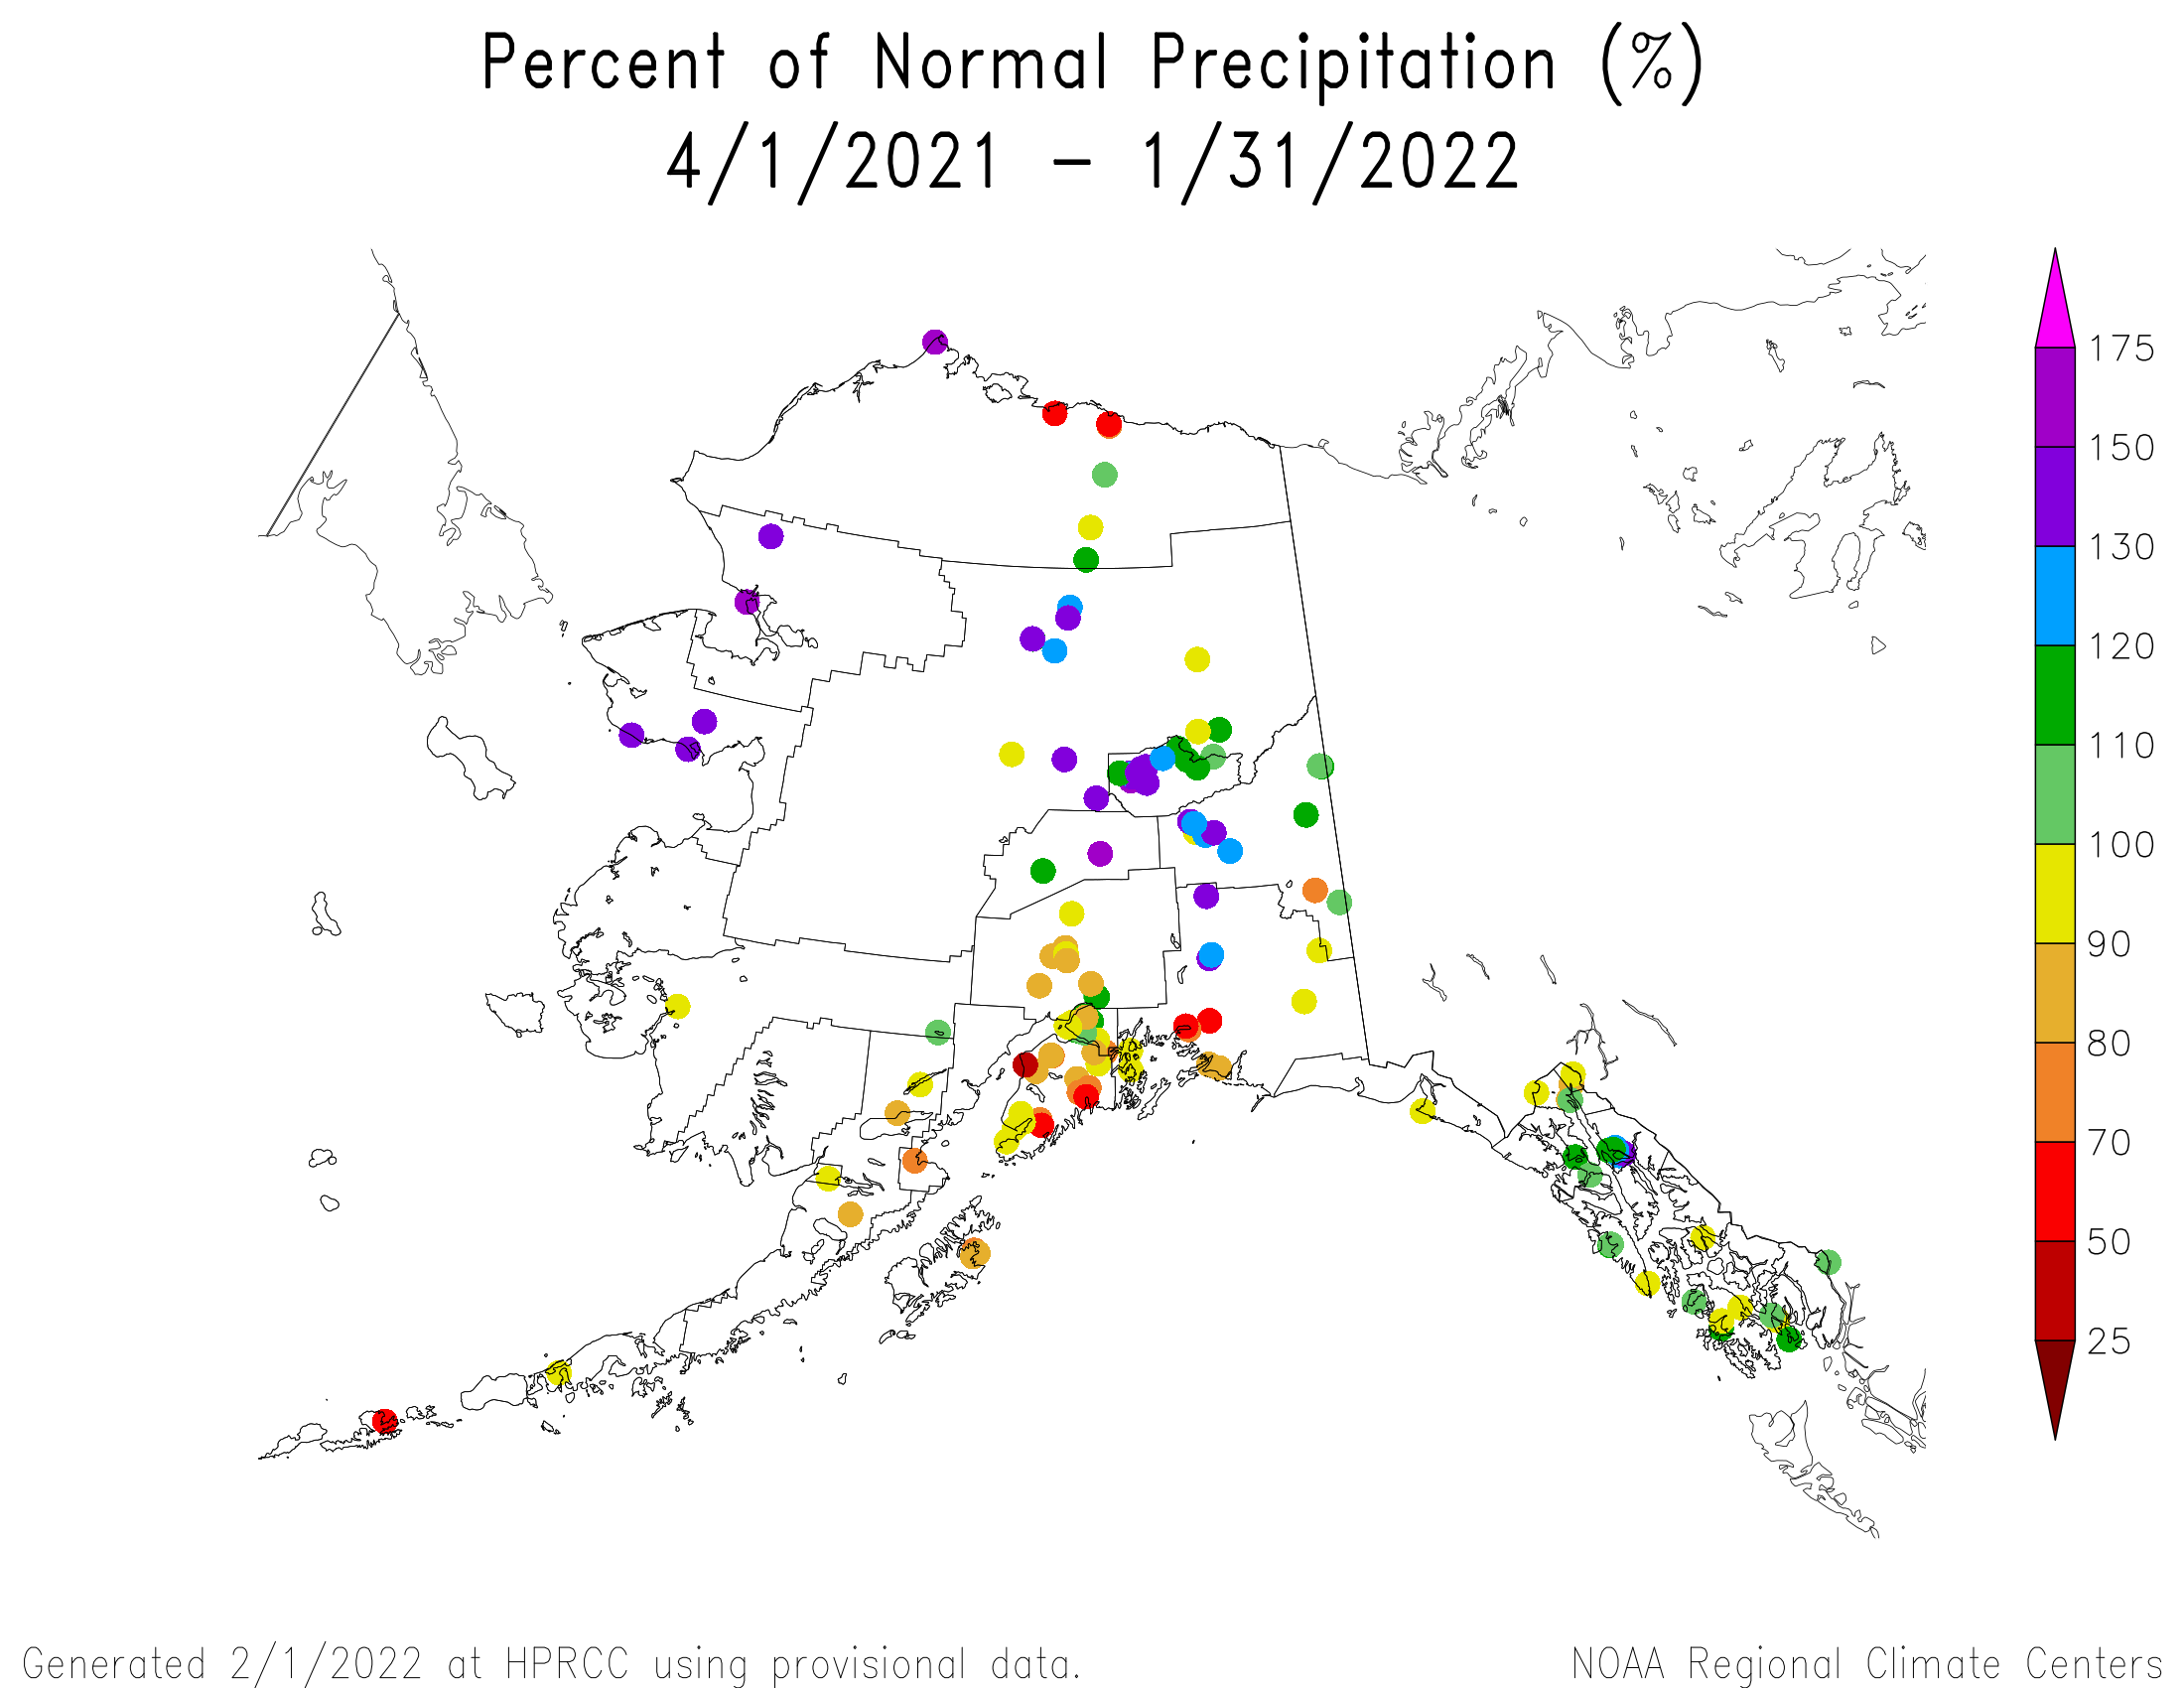 Alaska Percent of Normal Precipitation, April 2021-January 2022